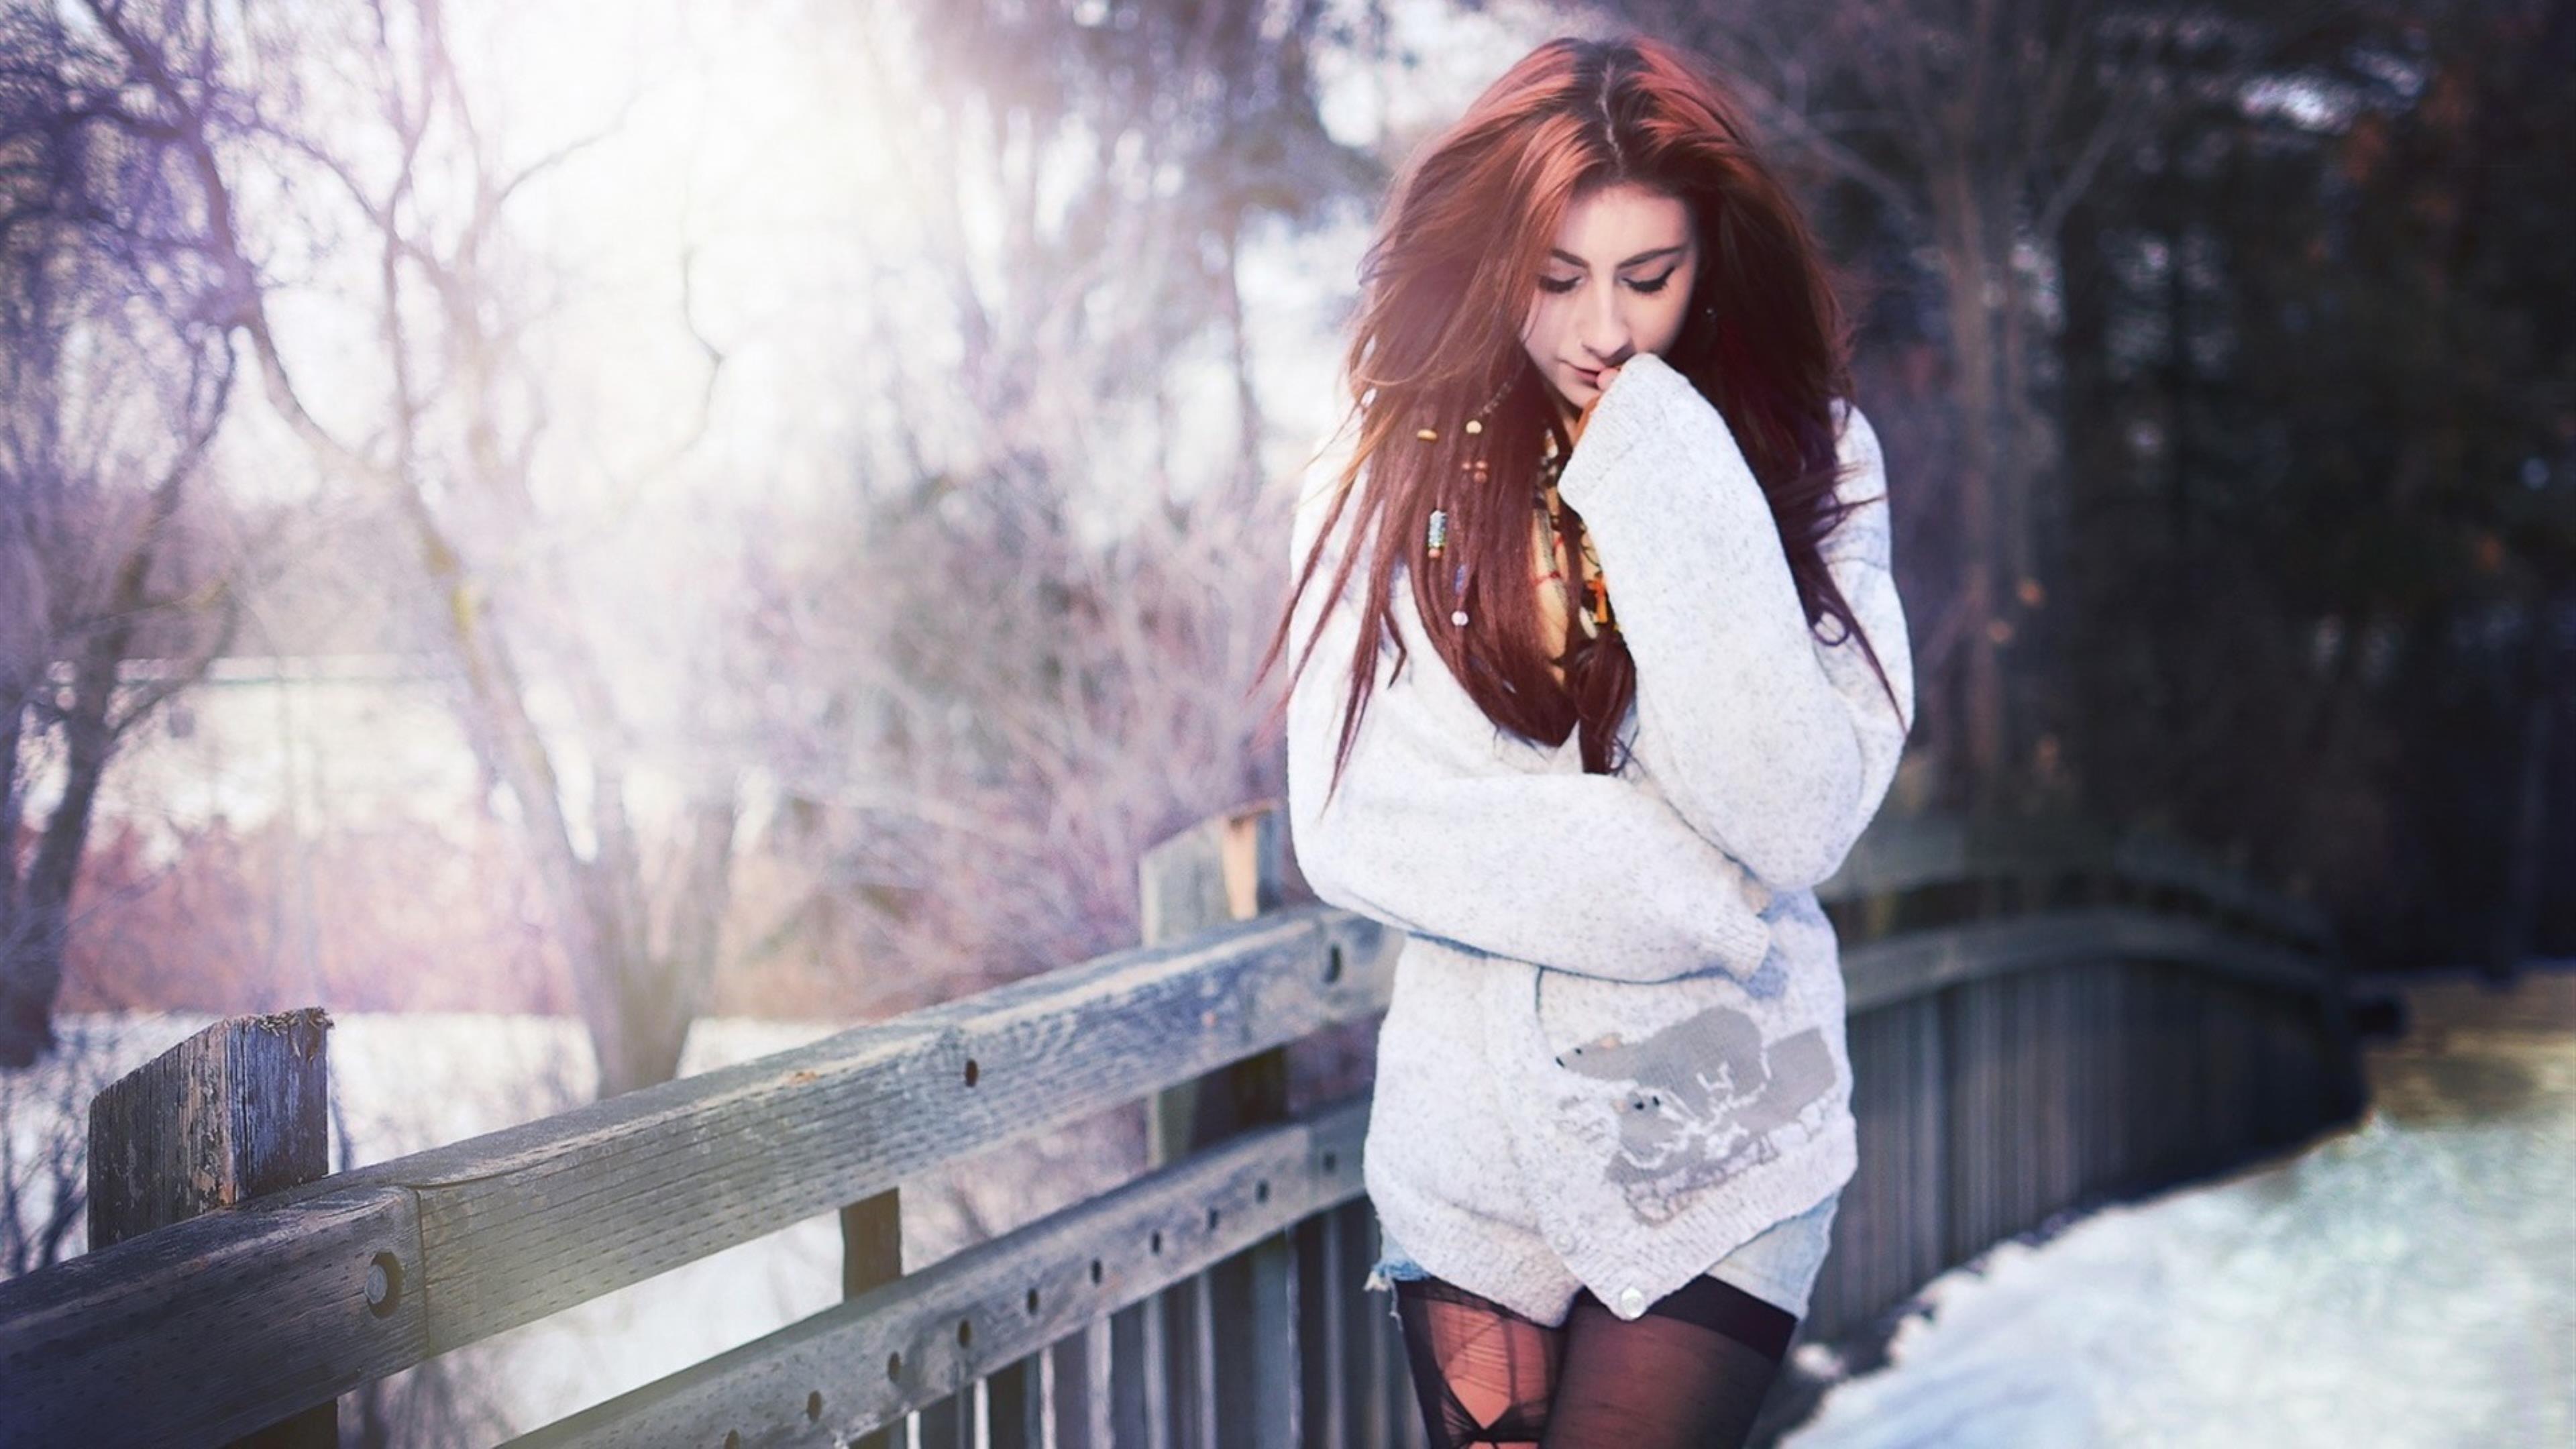 Запах ее темных волос nasty babe white. Девушка зима картинки. Девушка на мосту зима. Девушка зимой на мосту. Девушка с темными волосами зимой.